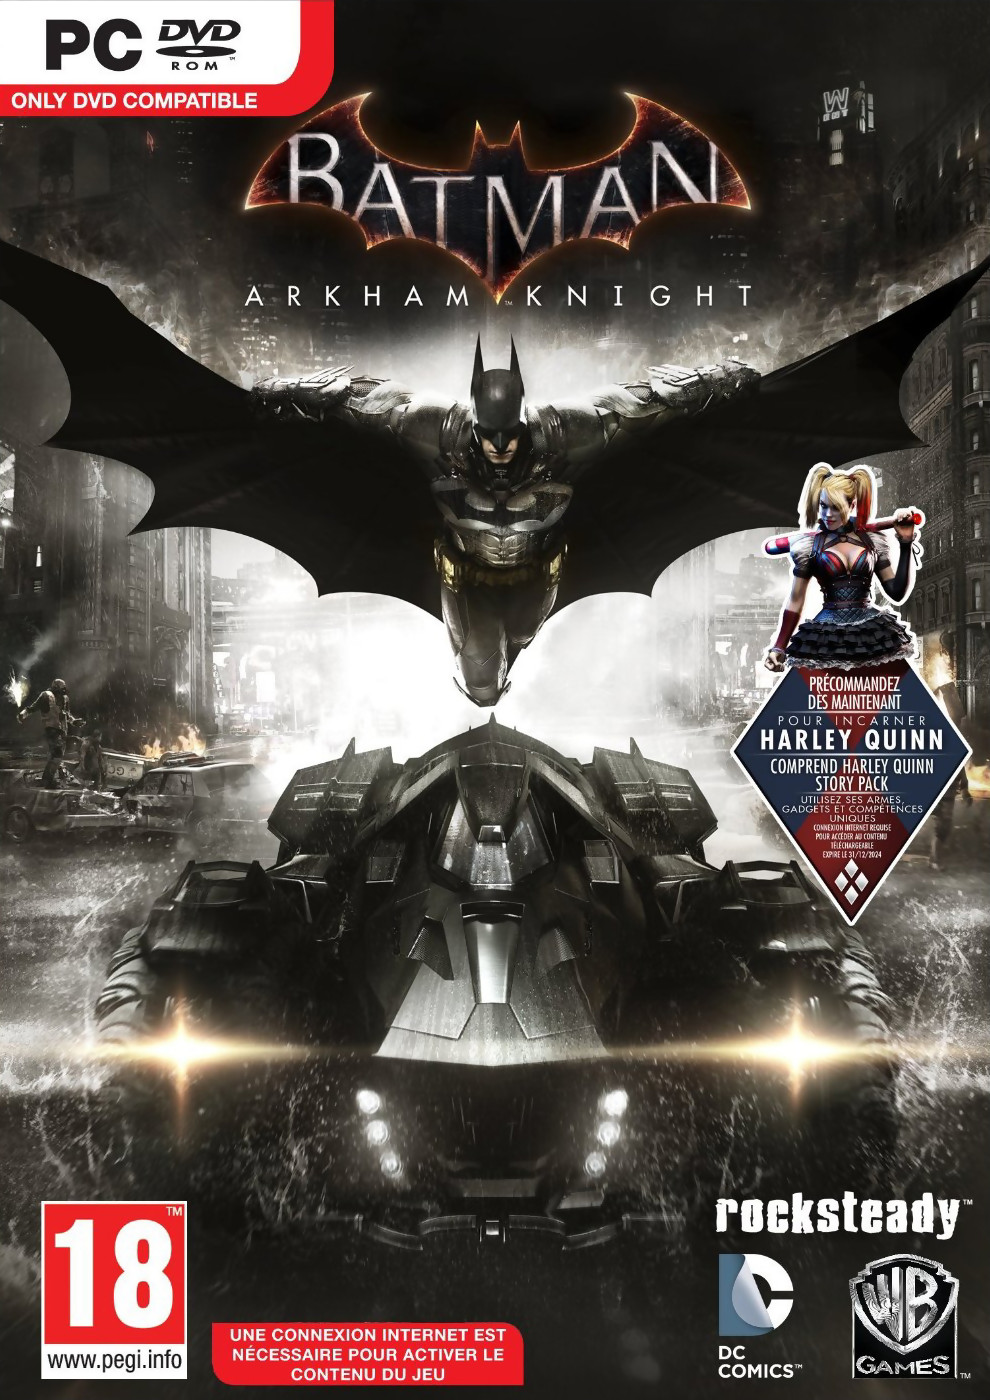 Batman Arkham Knight : astuces et cheat codes pour tricher